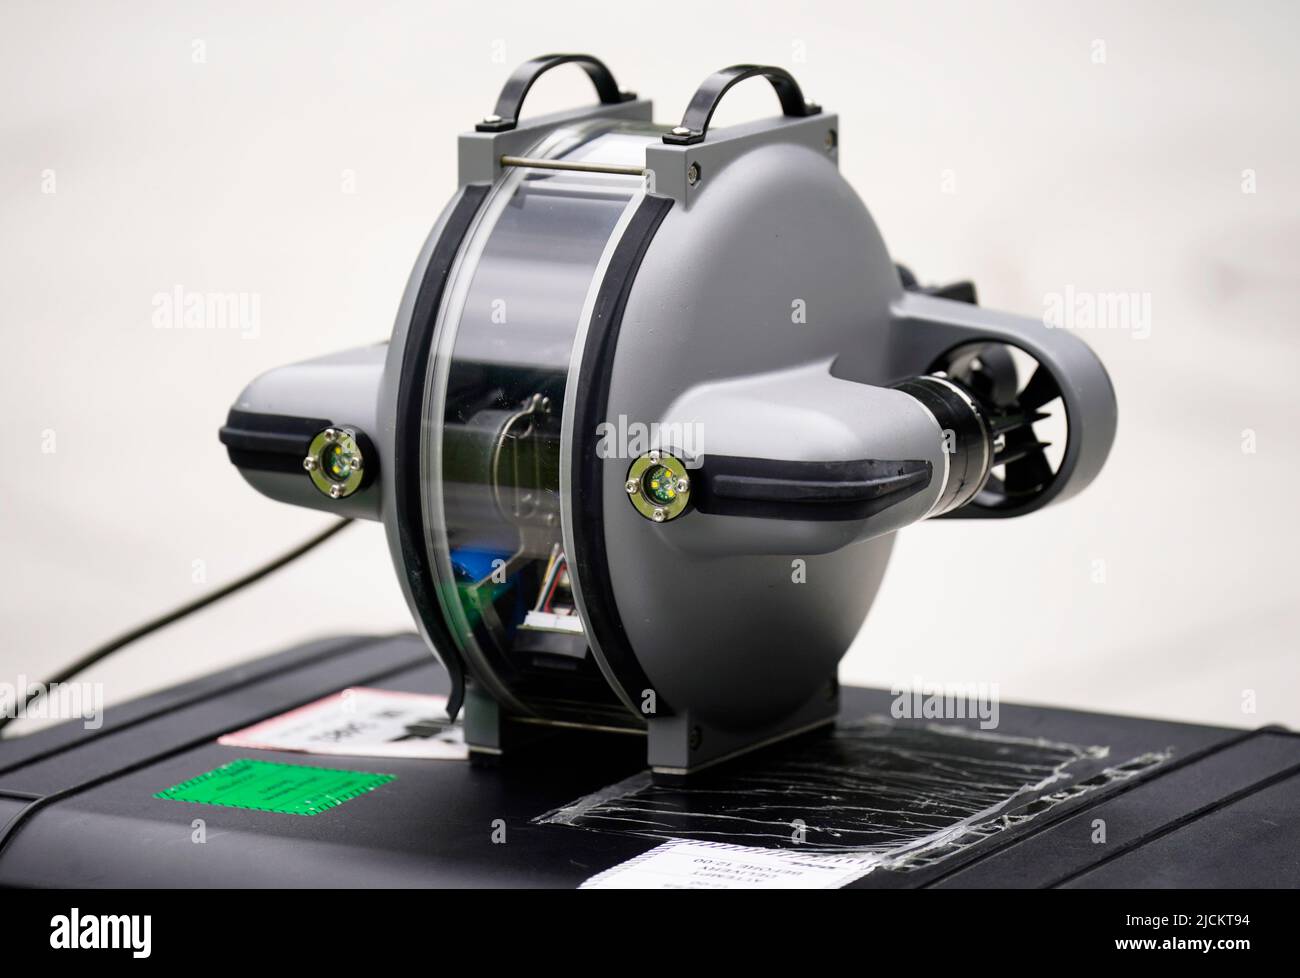 Eine Deep Trekker DTG3-Unterwasserdrohne mit Survelance-Technologie wurde bei einer Drohnentechnologie-Demonstration in den Dublin City Council-Büros in Dublin ausgestellt. Bilddatum: Dienstag, 14. Juni 2022. Stockfoto